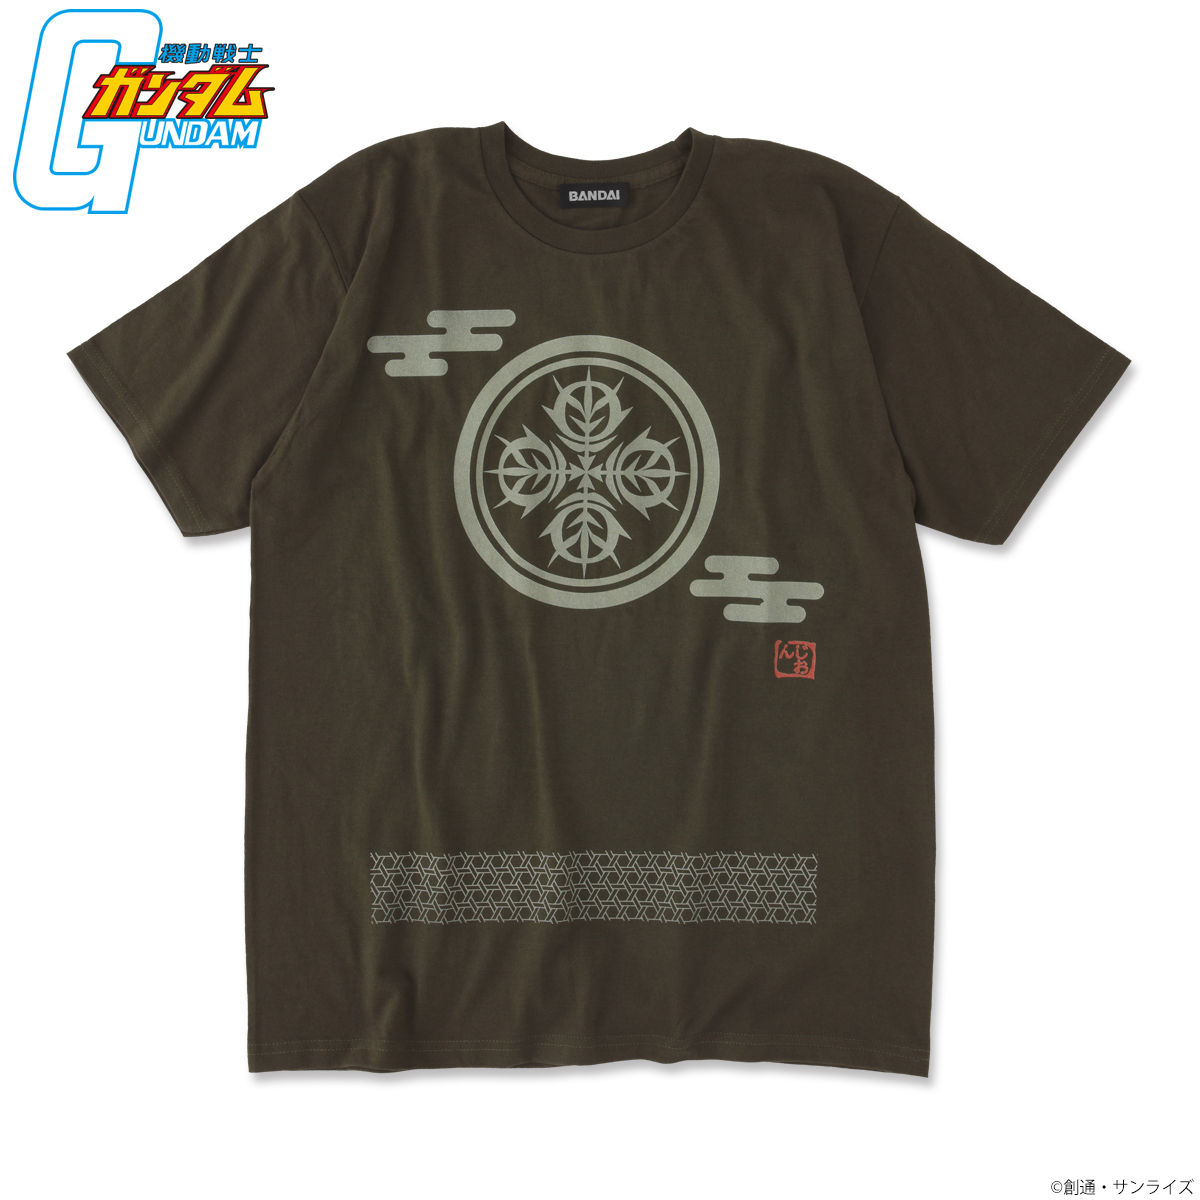 Mobile Suit Gundam Japanese Family Crest T-shirt